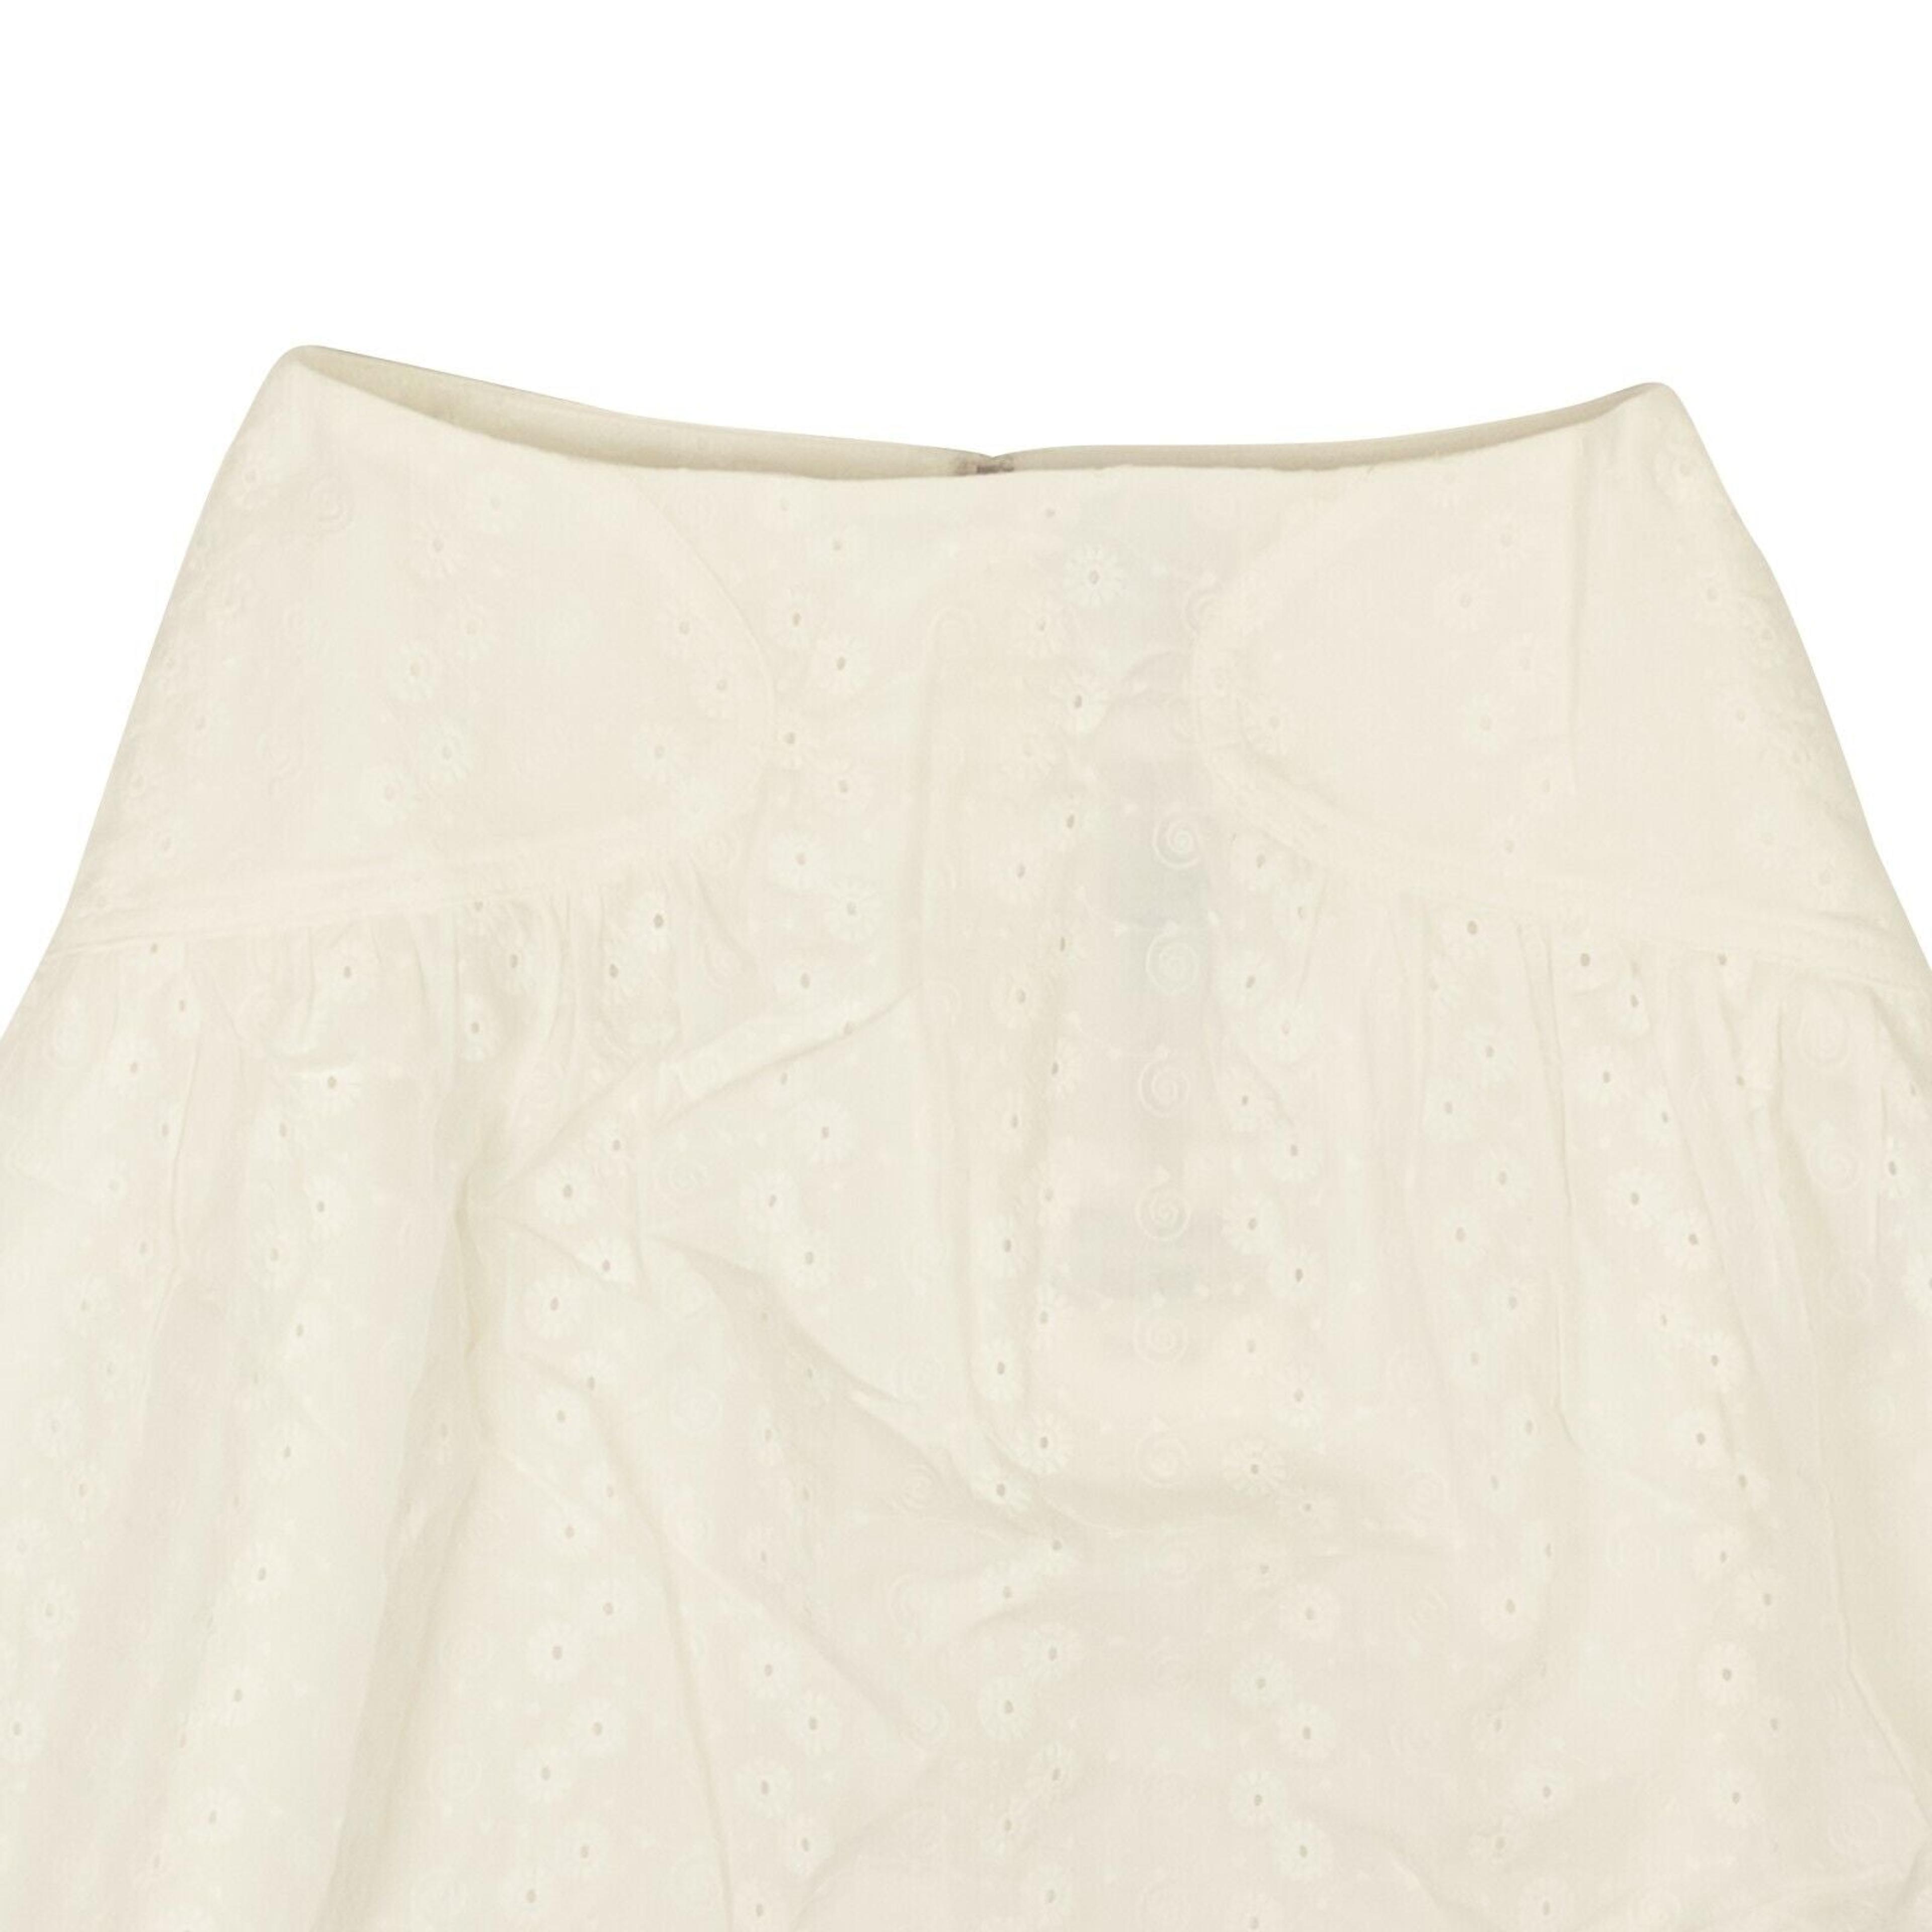 Alternate View 1 of Optic White Cotton Eyelet Mini Skirt